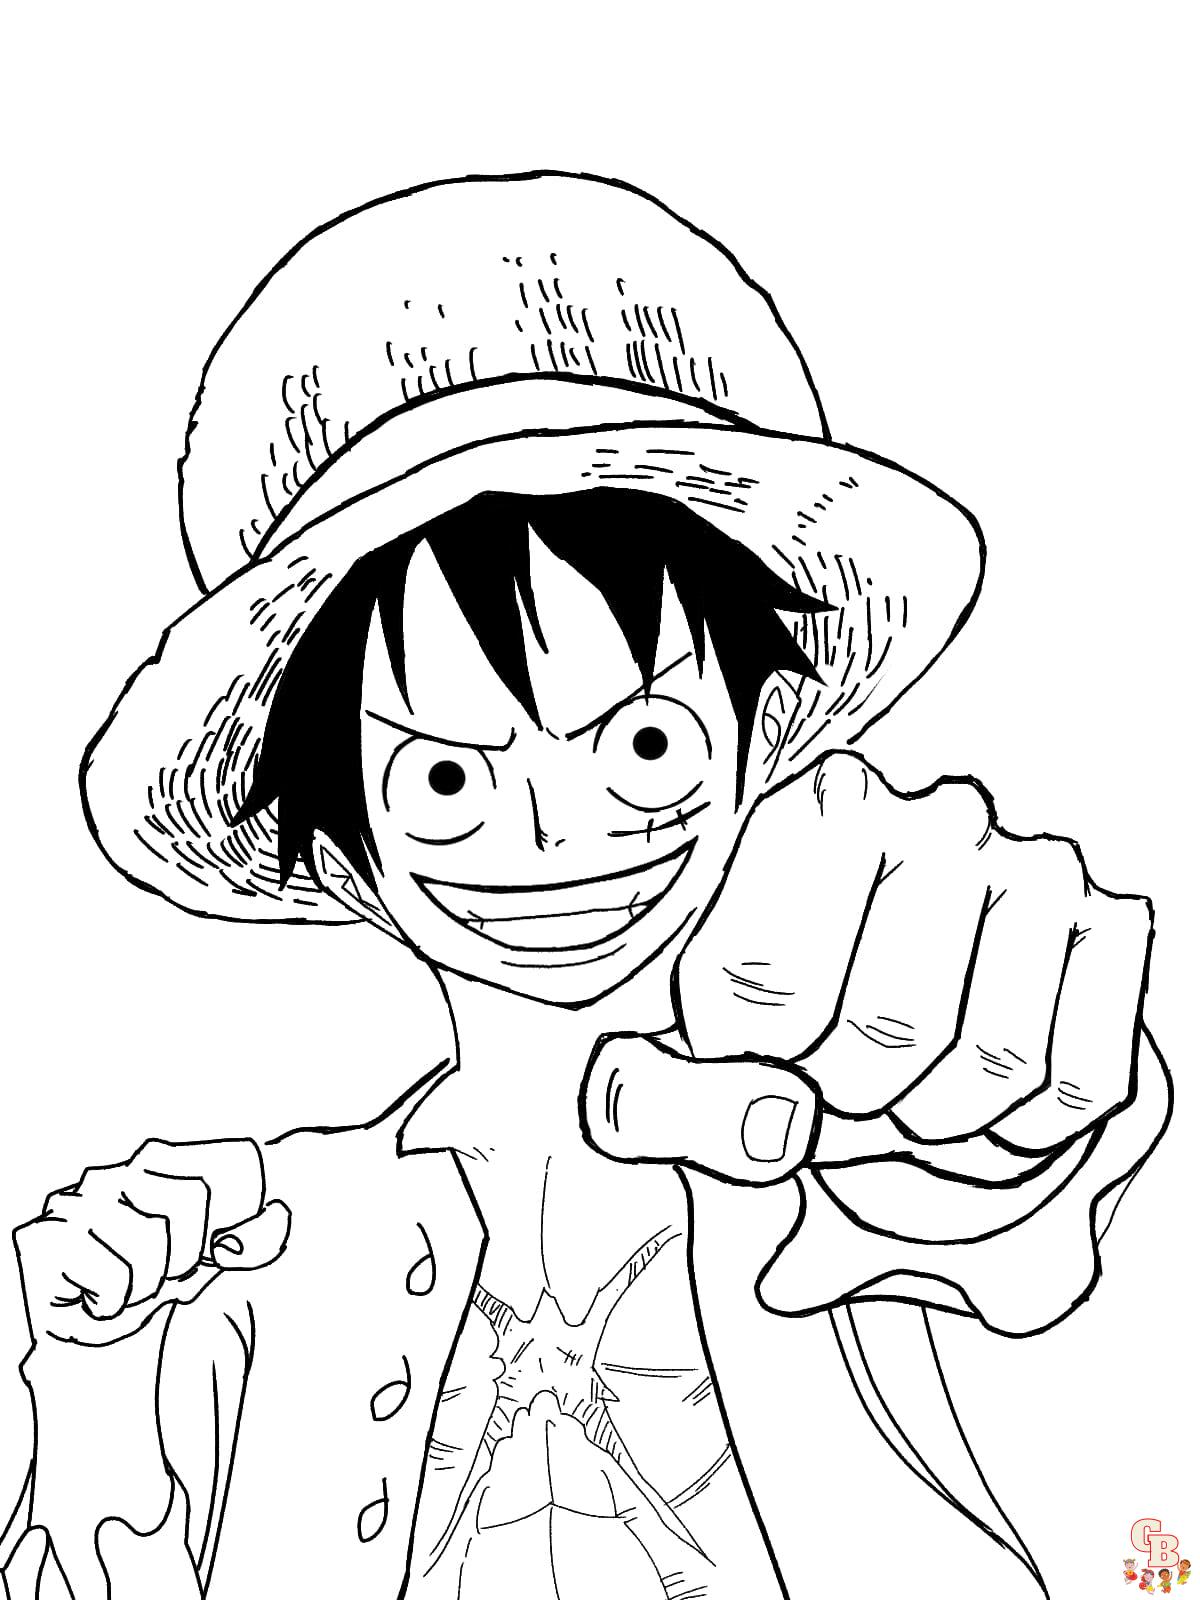 Coloriage One Piece Les personnages de One Piece à colorier gratuitement